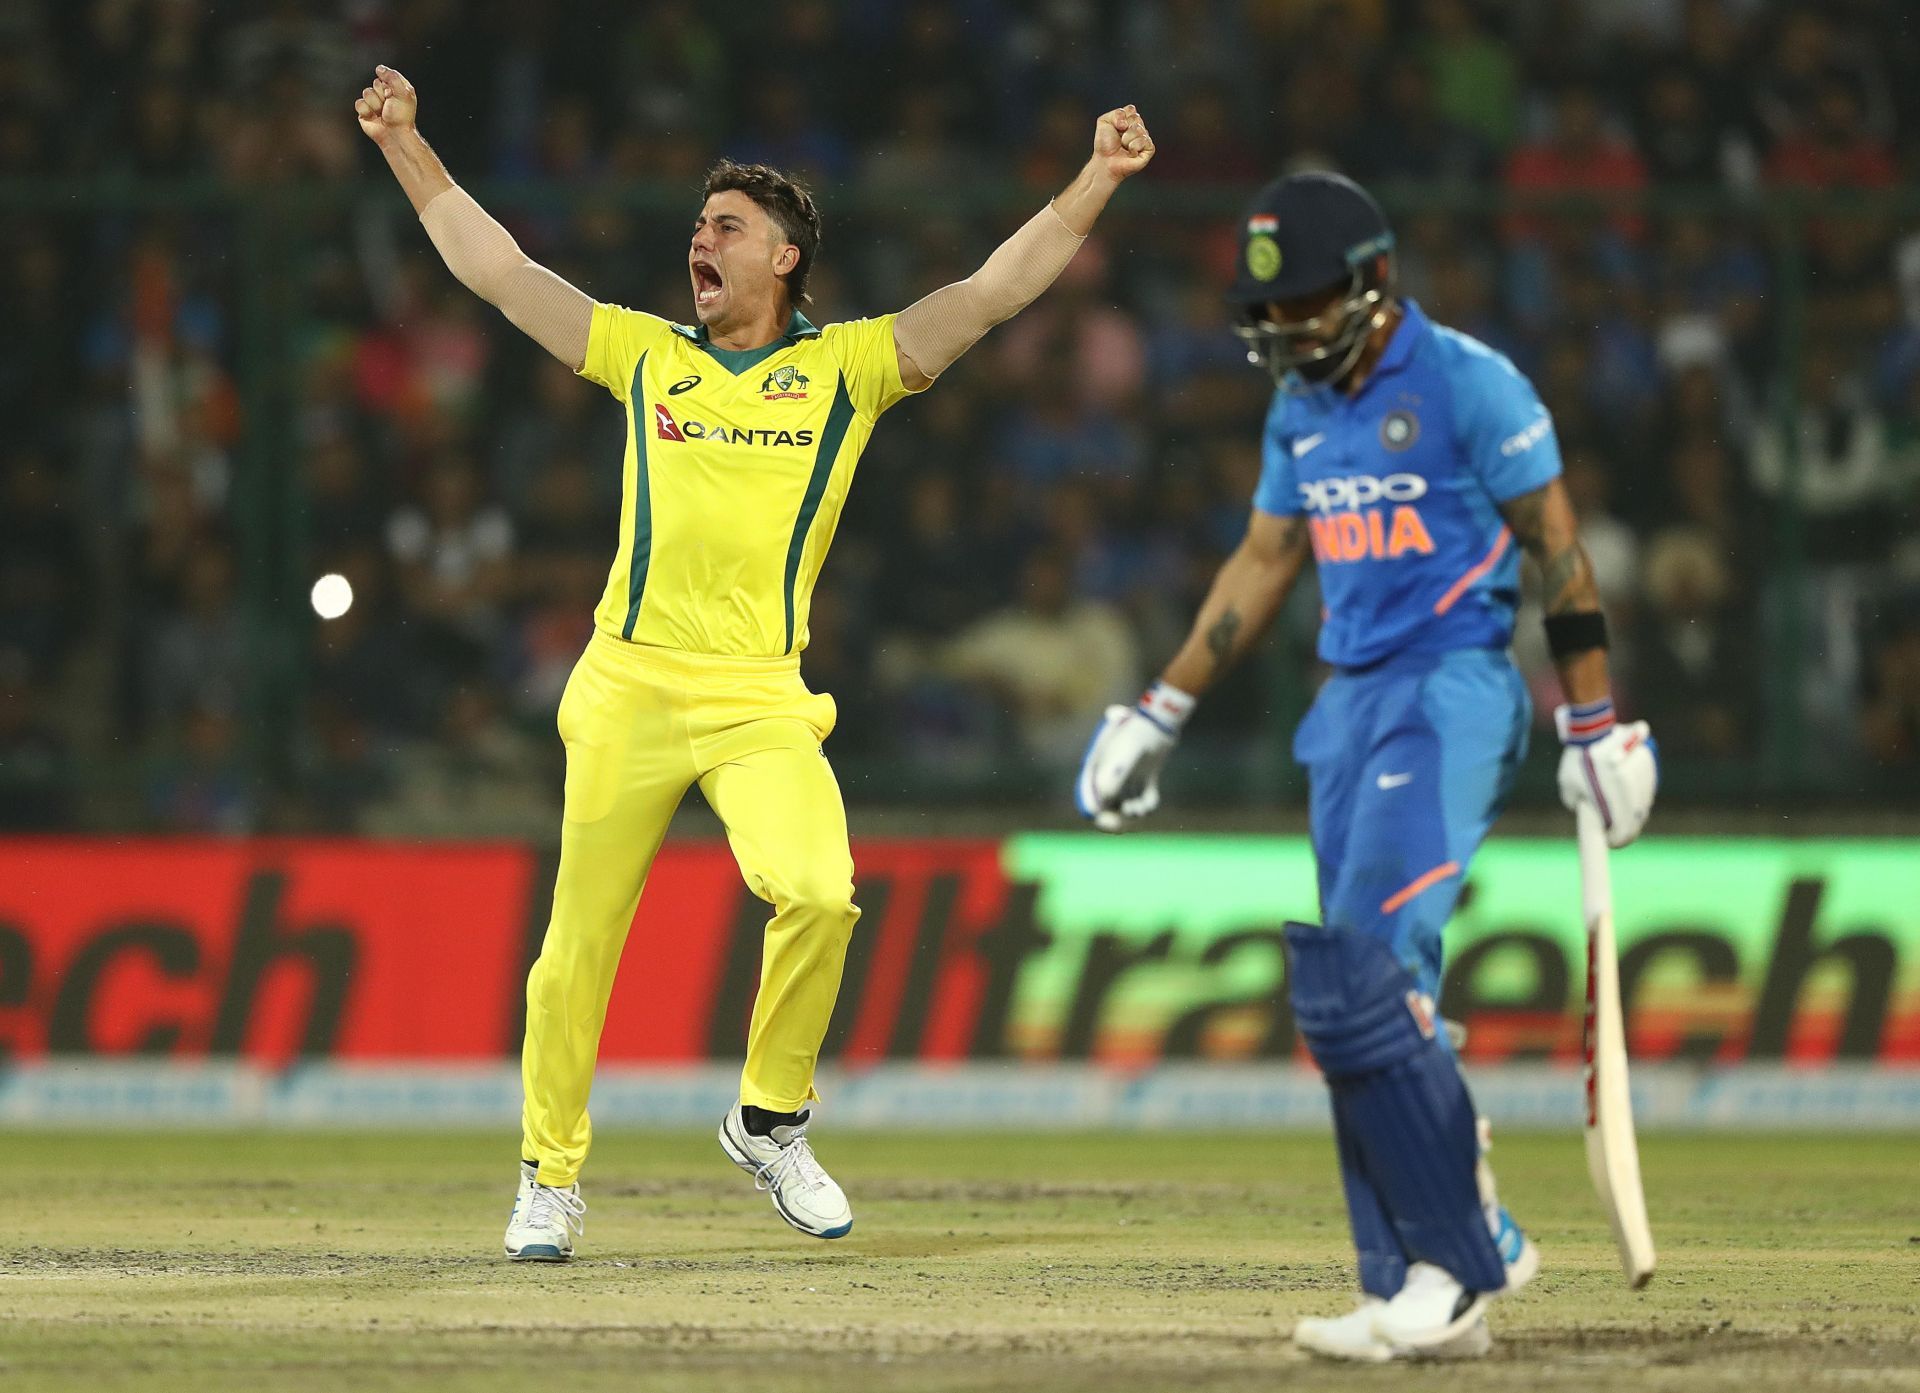 India v Australia 5th ODI at Delhi in 2019